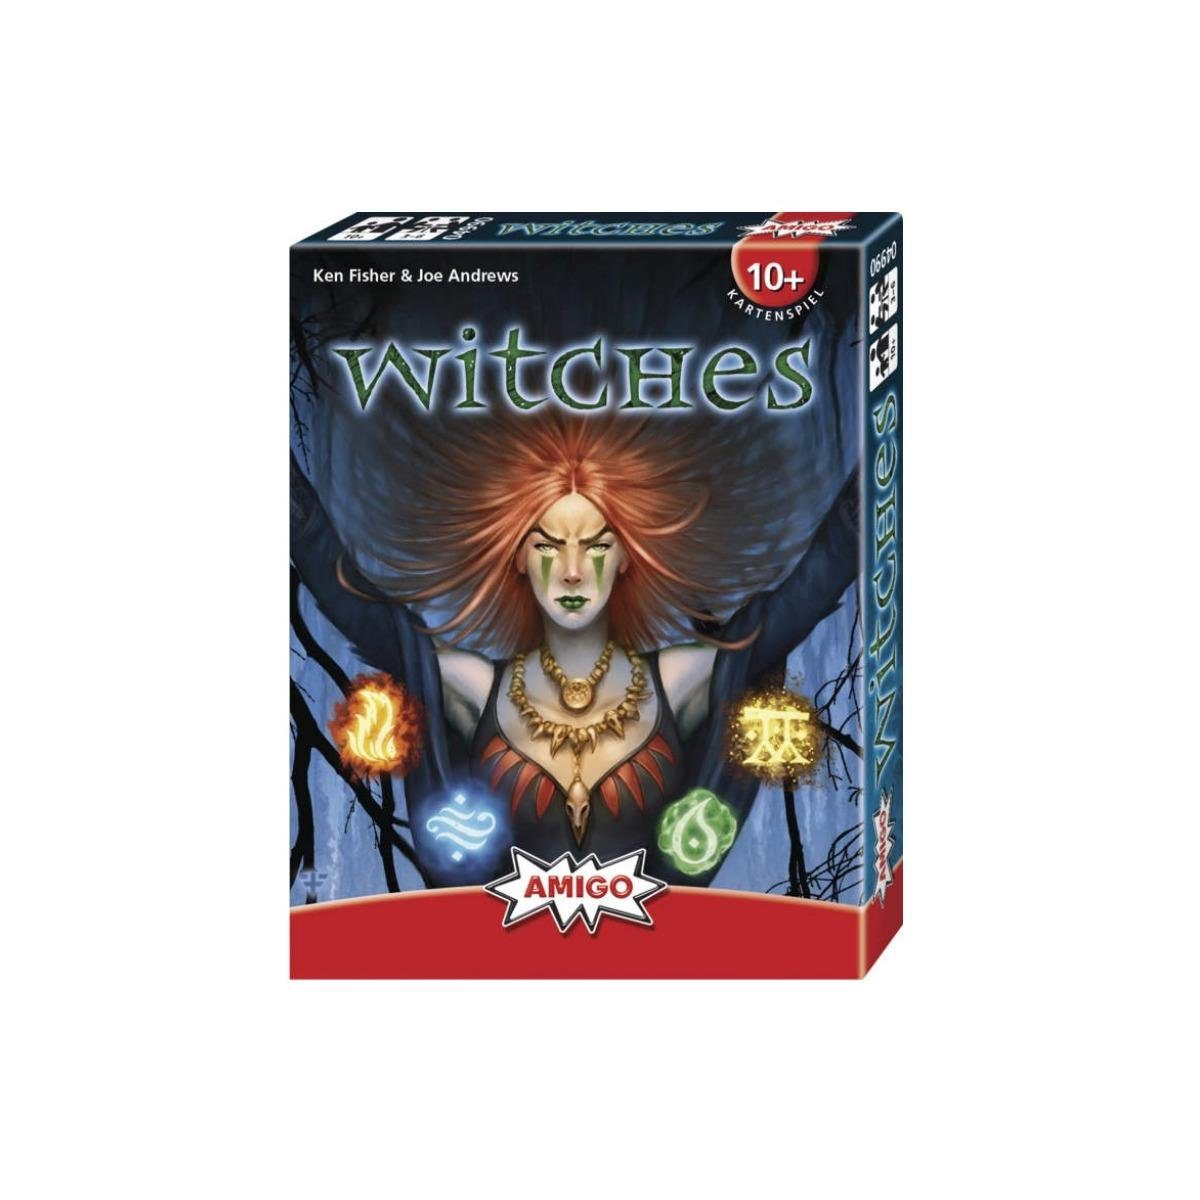 AMIGO Spiel, Familienspiel 10036073 - Witches, Kartenspiel, für 3-6 Ігриr, ab 10..., Familienspiel